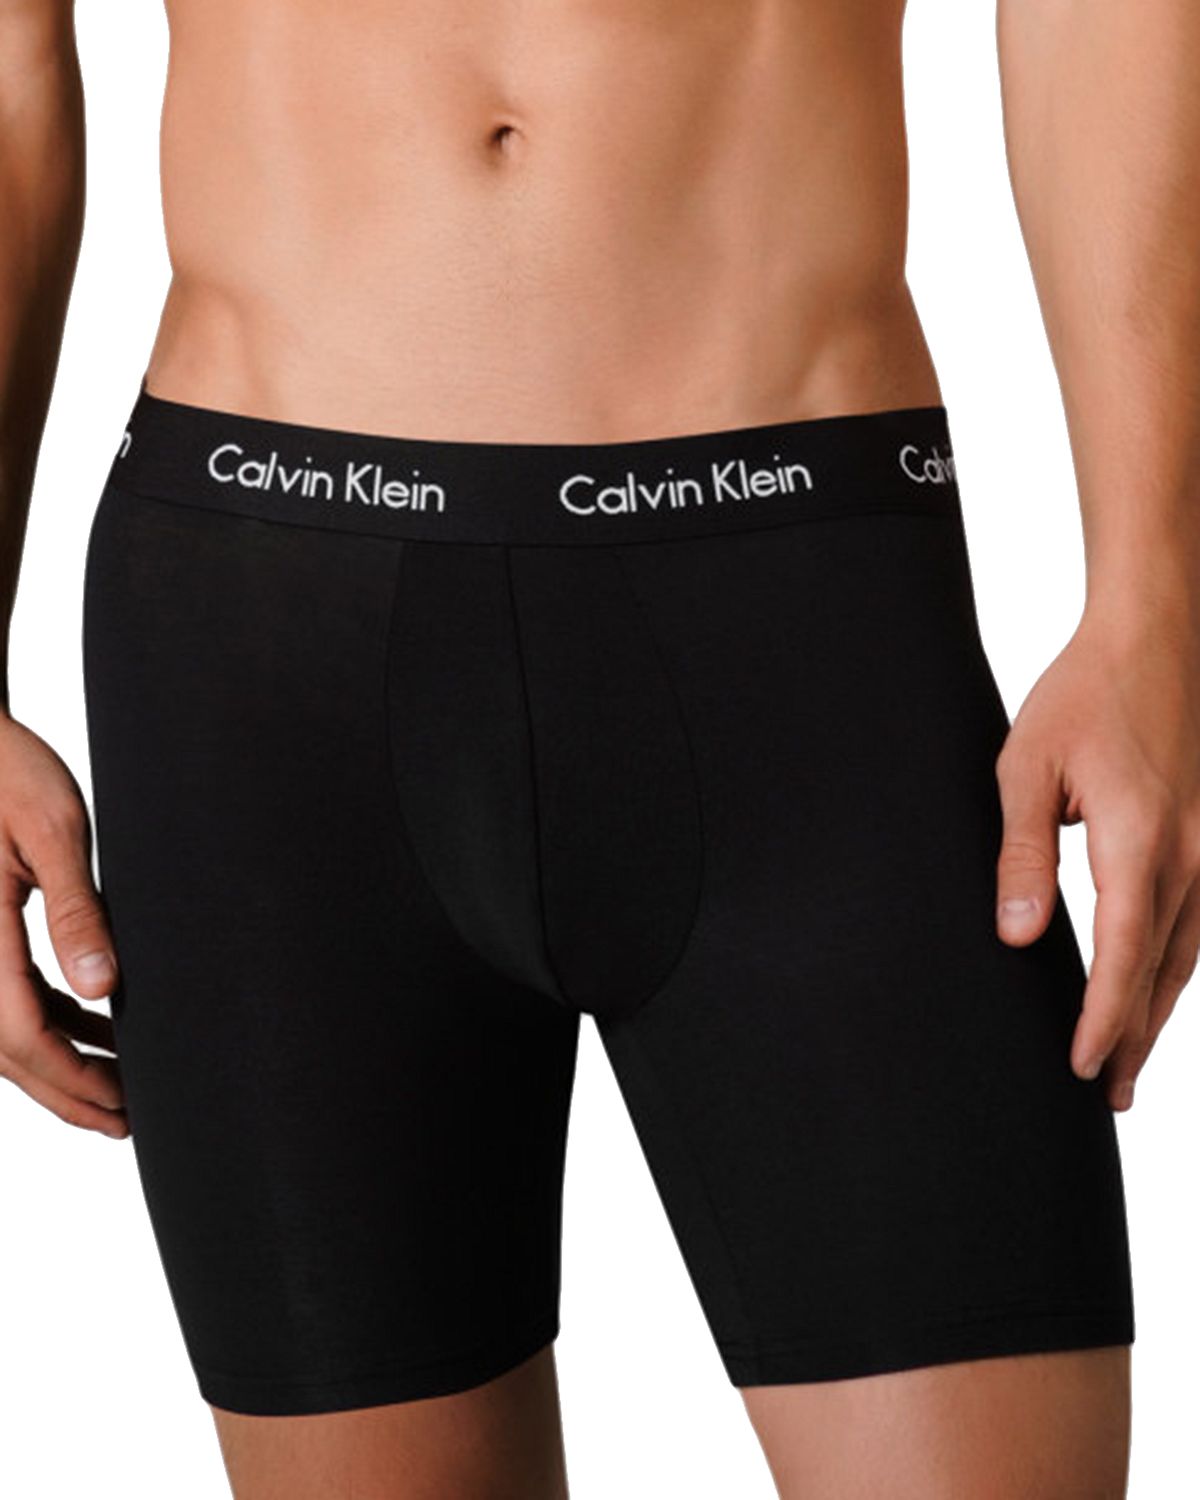 Calvin Klein Body Modal Boxer Briefs Black